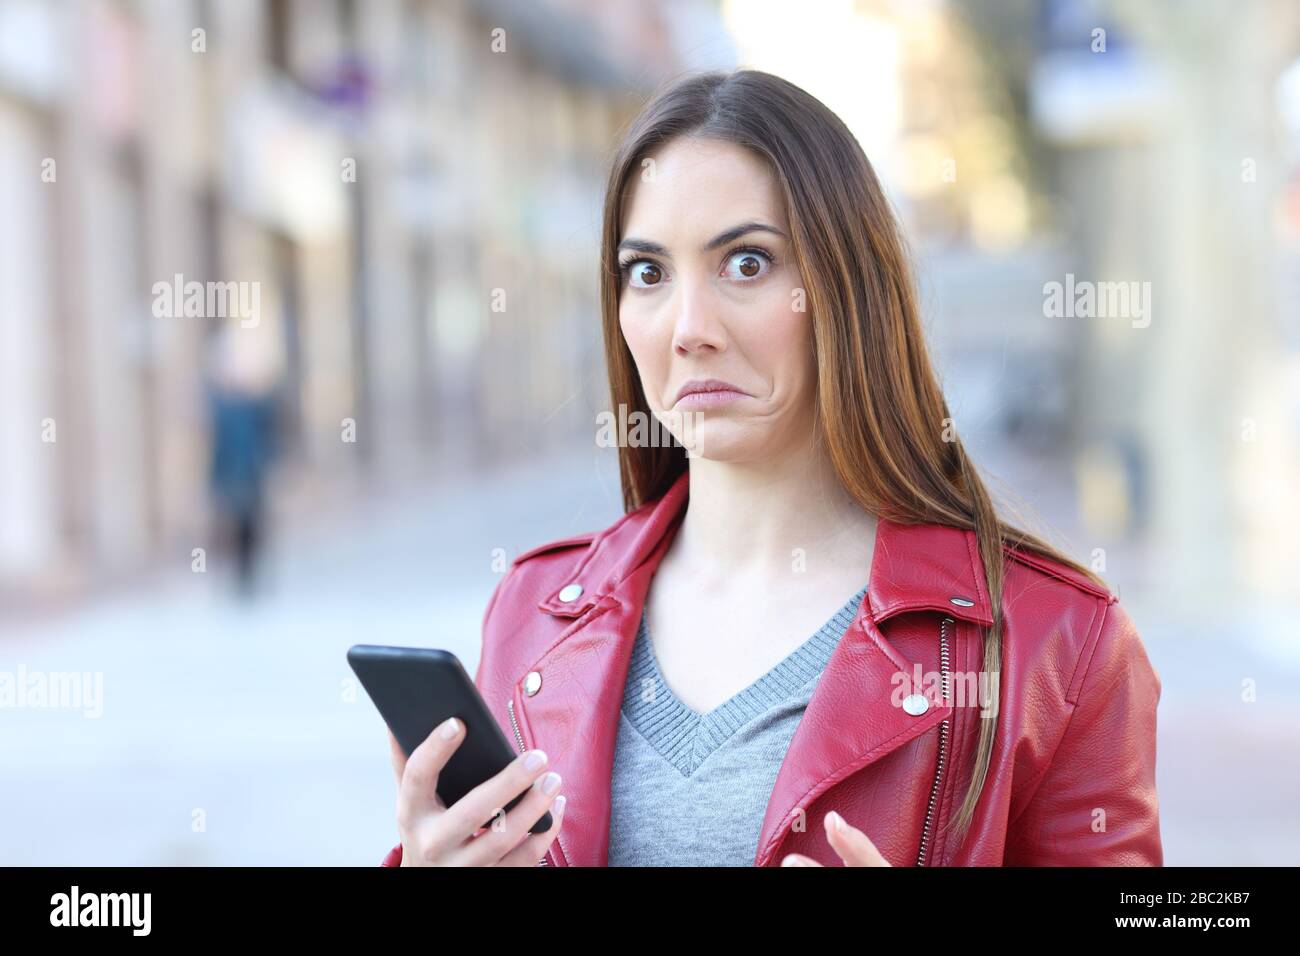 La donna perplessa che usa il telefono cellulare guarda la fotocamera in piedi in strada Foto Stock